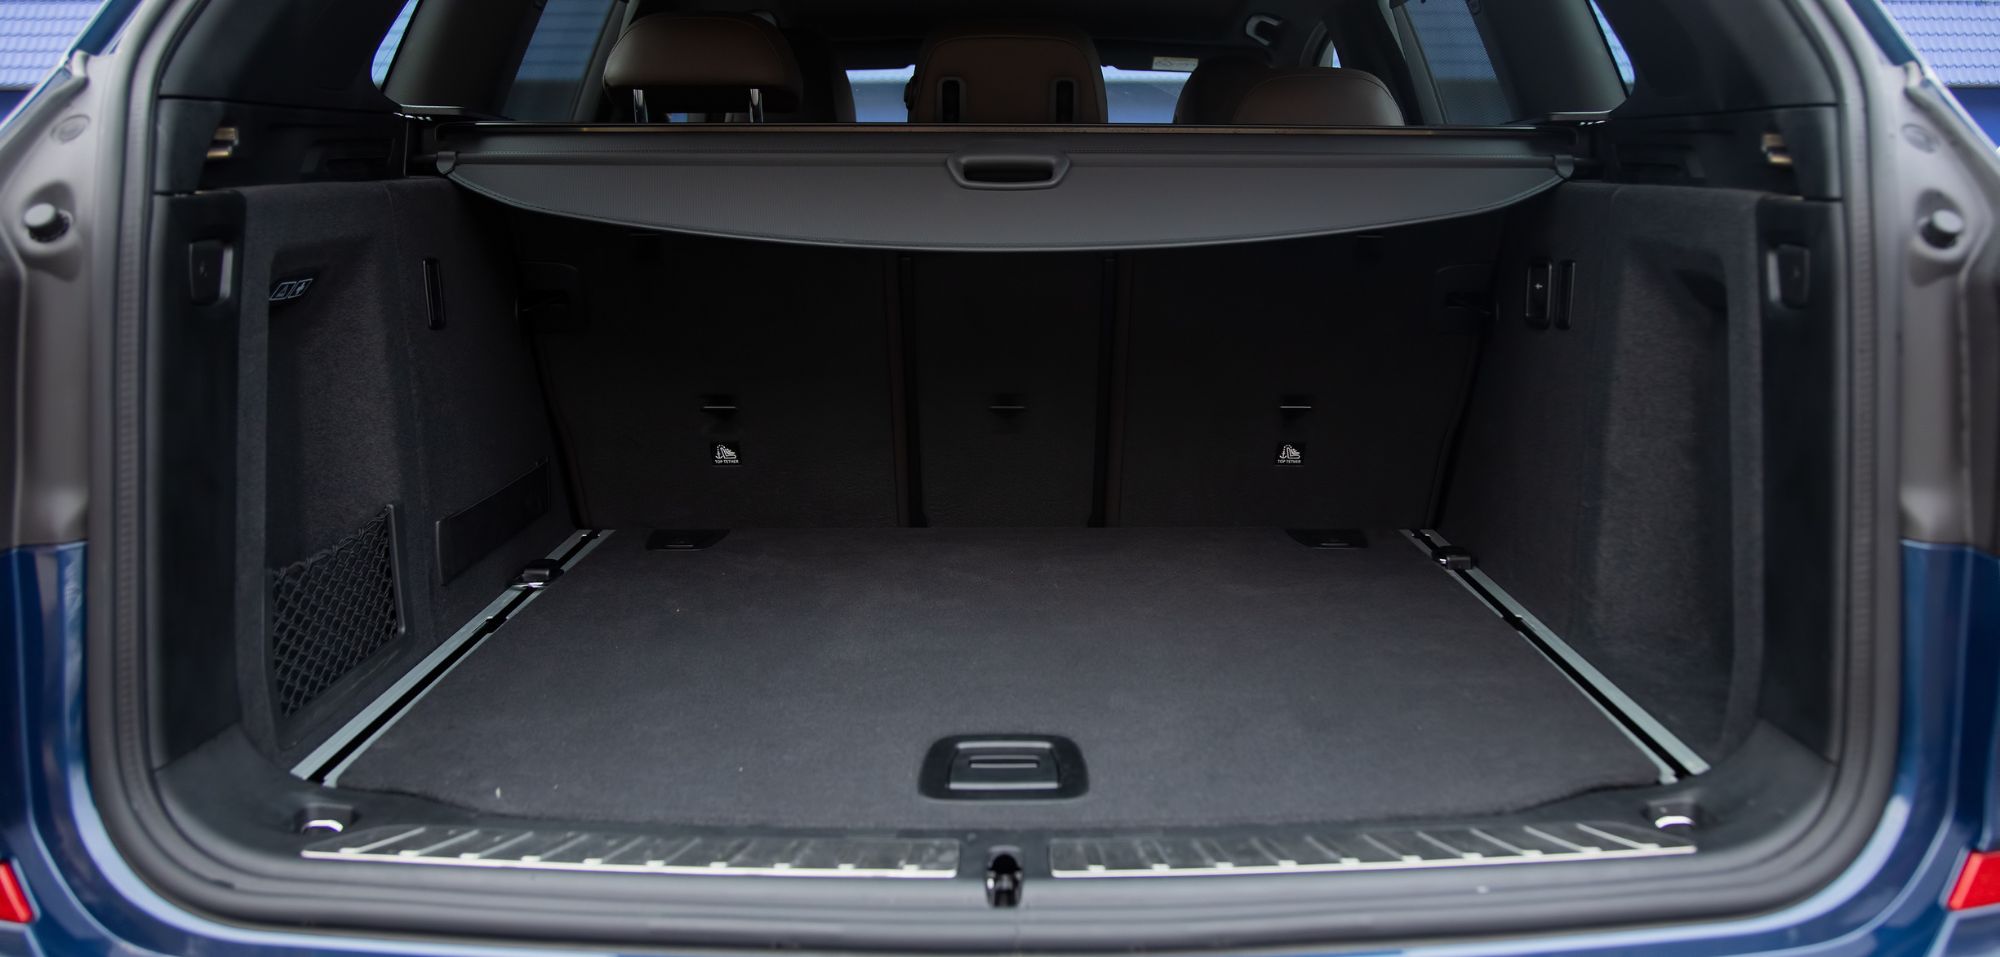 Auto: Verstecktes Feature verbirgt sich im Kofferraum - Futurezone